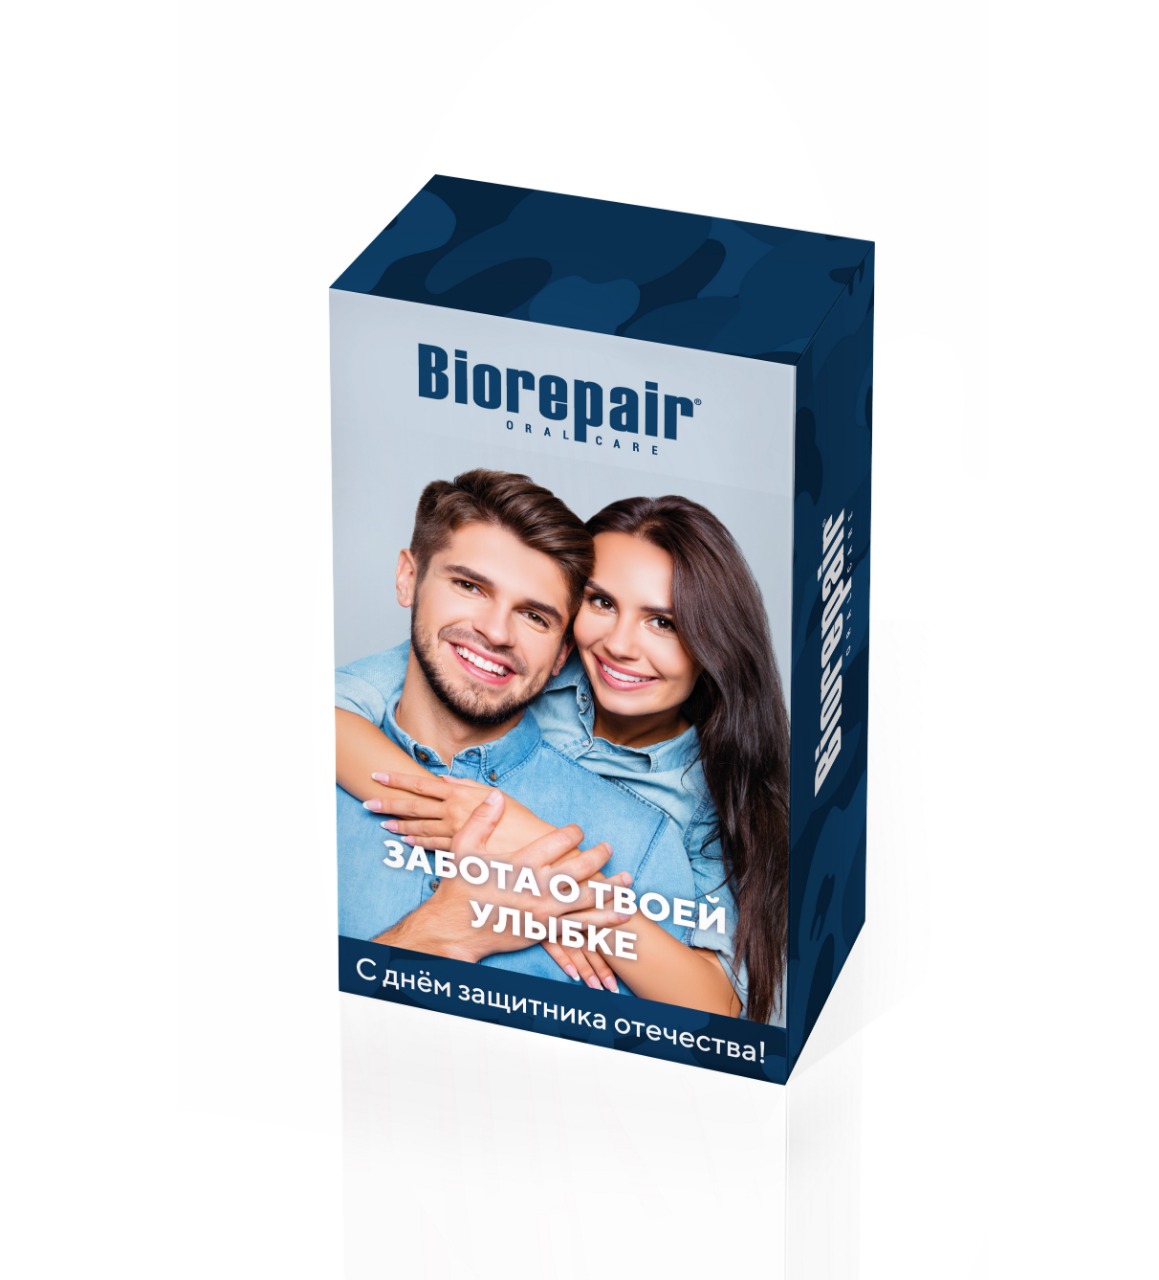 Купить Biorepair Набор в коробке Biorepair Забота о твоей улыбке: Biorepair ProWhite + Night (Biorepair, Отбеливание и лечение), Италия